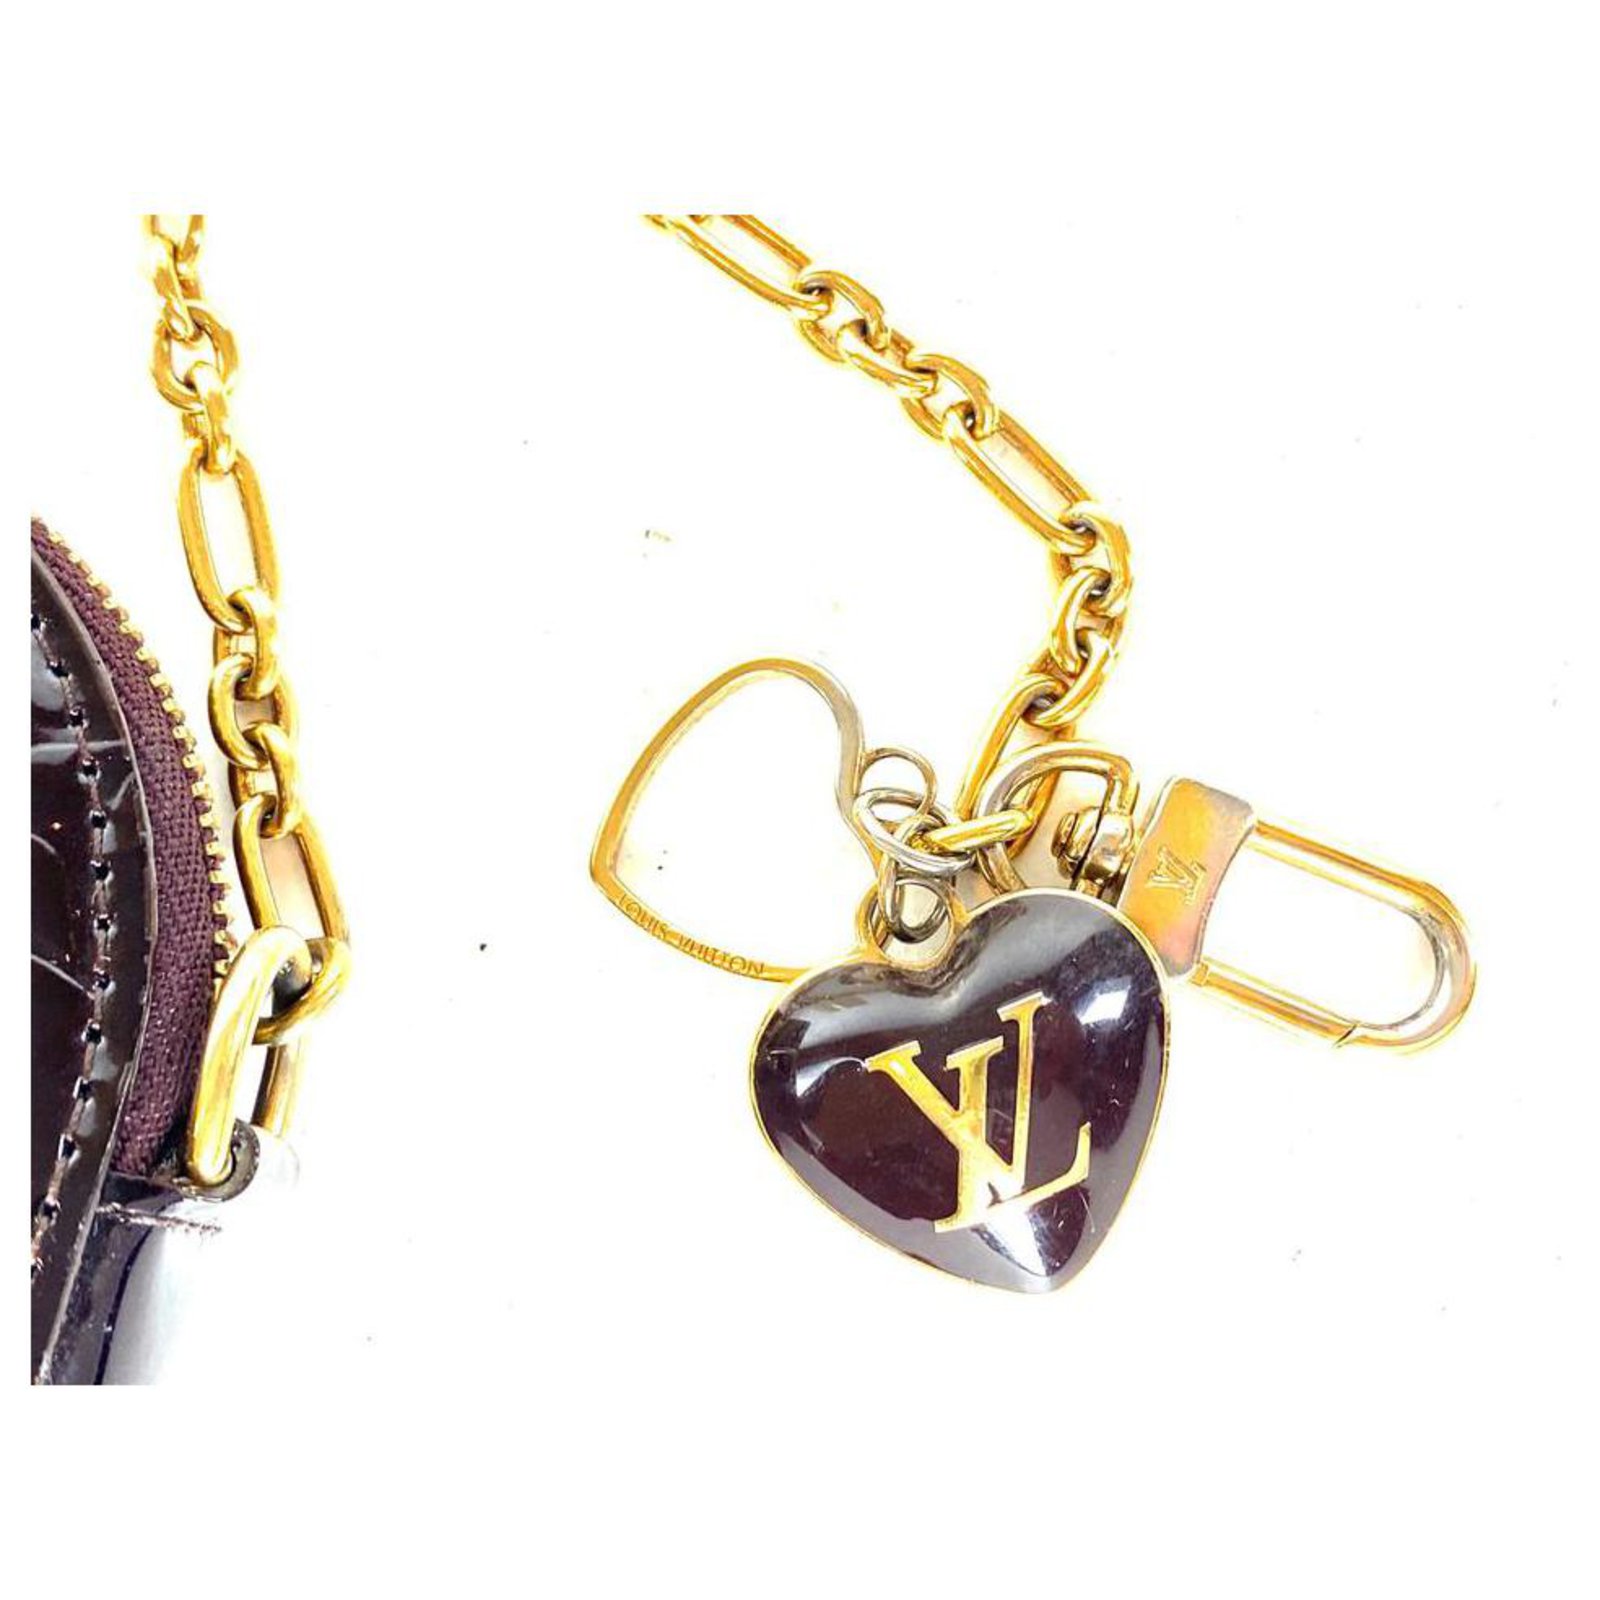 Louis Vuitton Amarante Monogram Vernis Coeur Heart Coin Purse Red